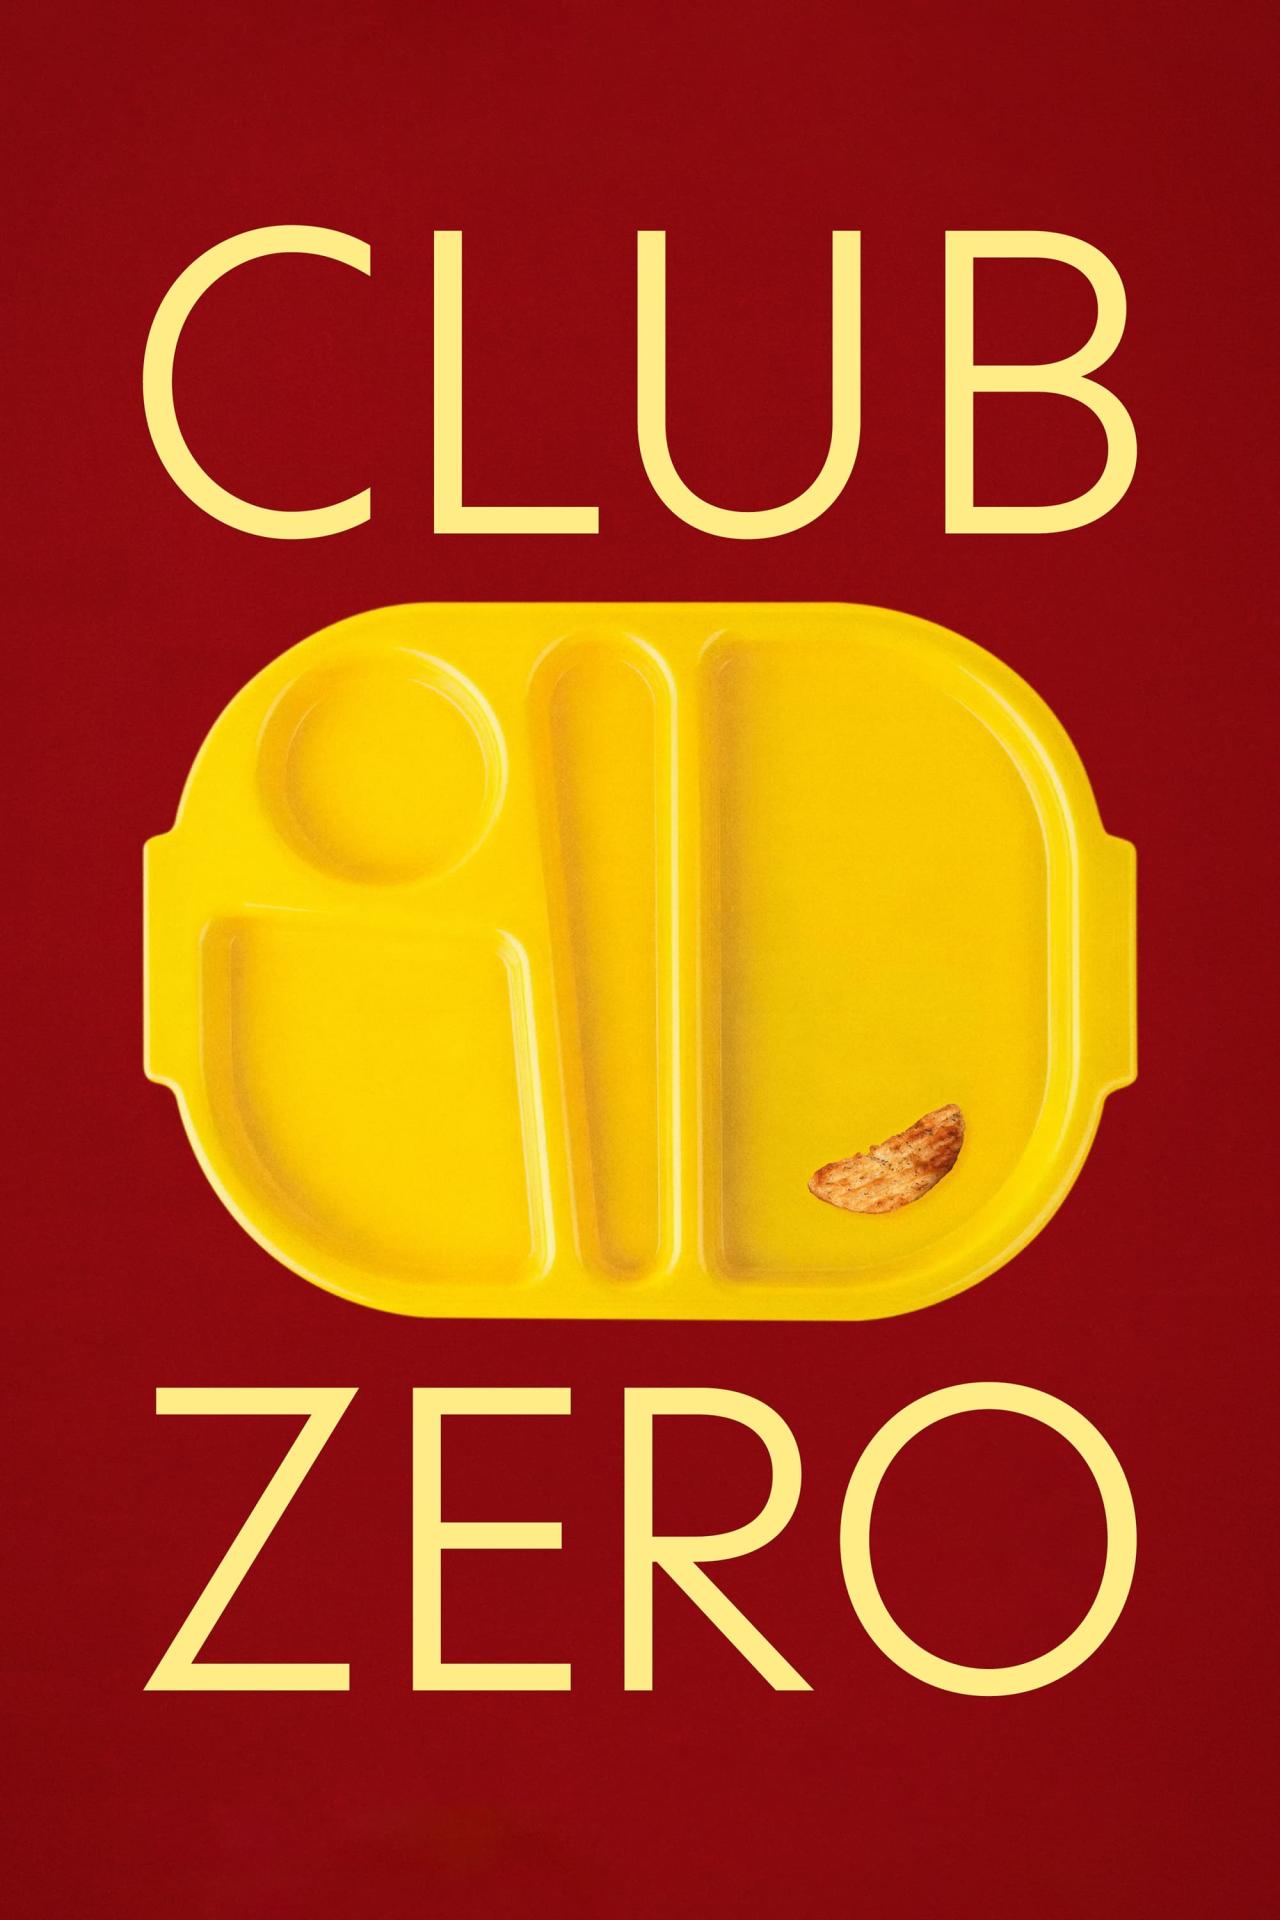 Club Zero est-il disponible sur Netflix ou autre ?